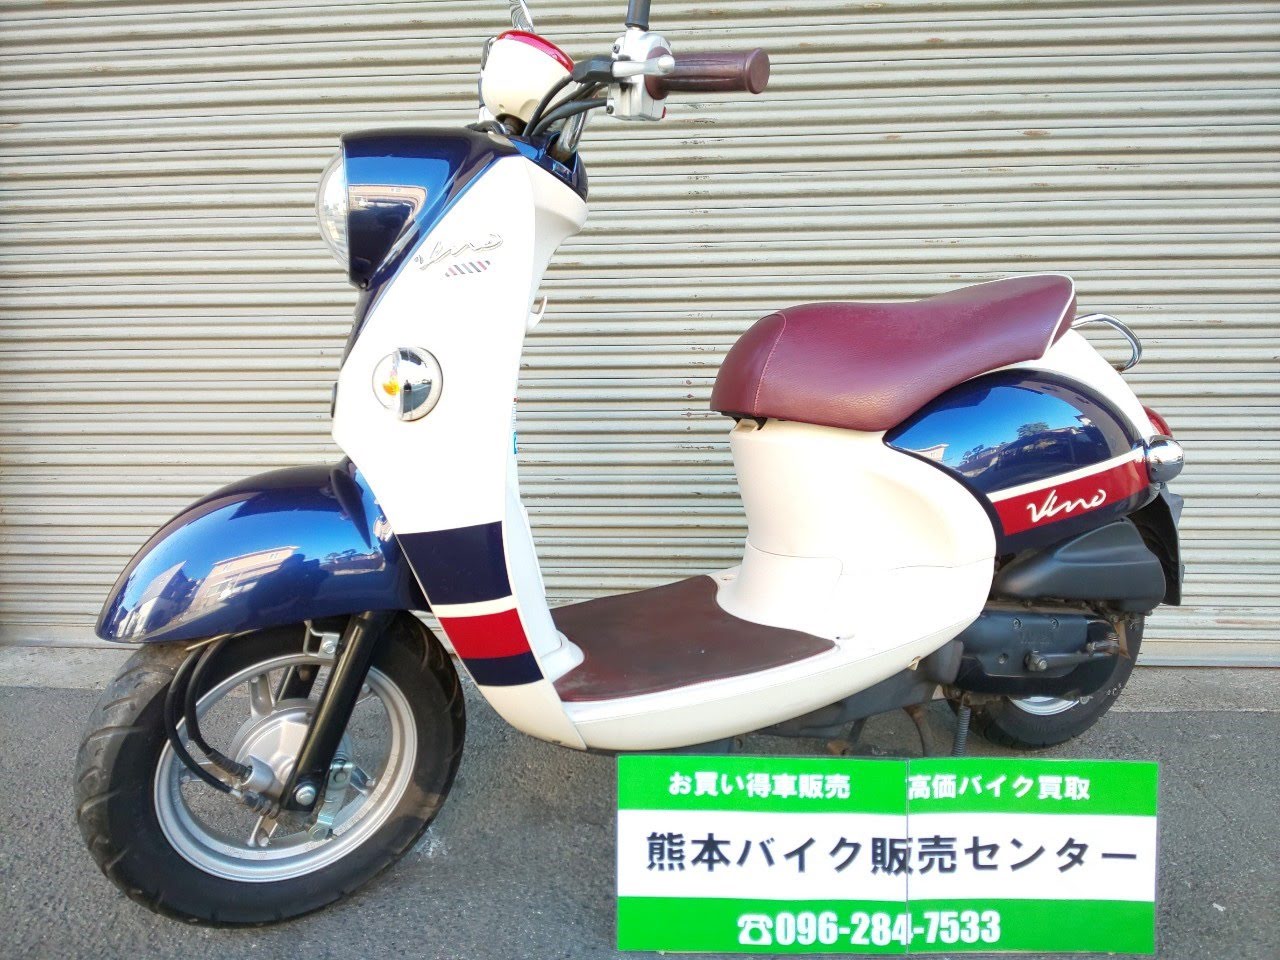 熊本の中古原付専門店 ヤマハのビーノdx 13年式 熊本の中古原付販売専門店 50cc 125ccまで